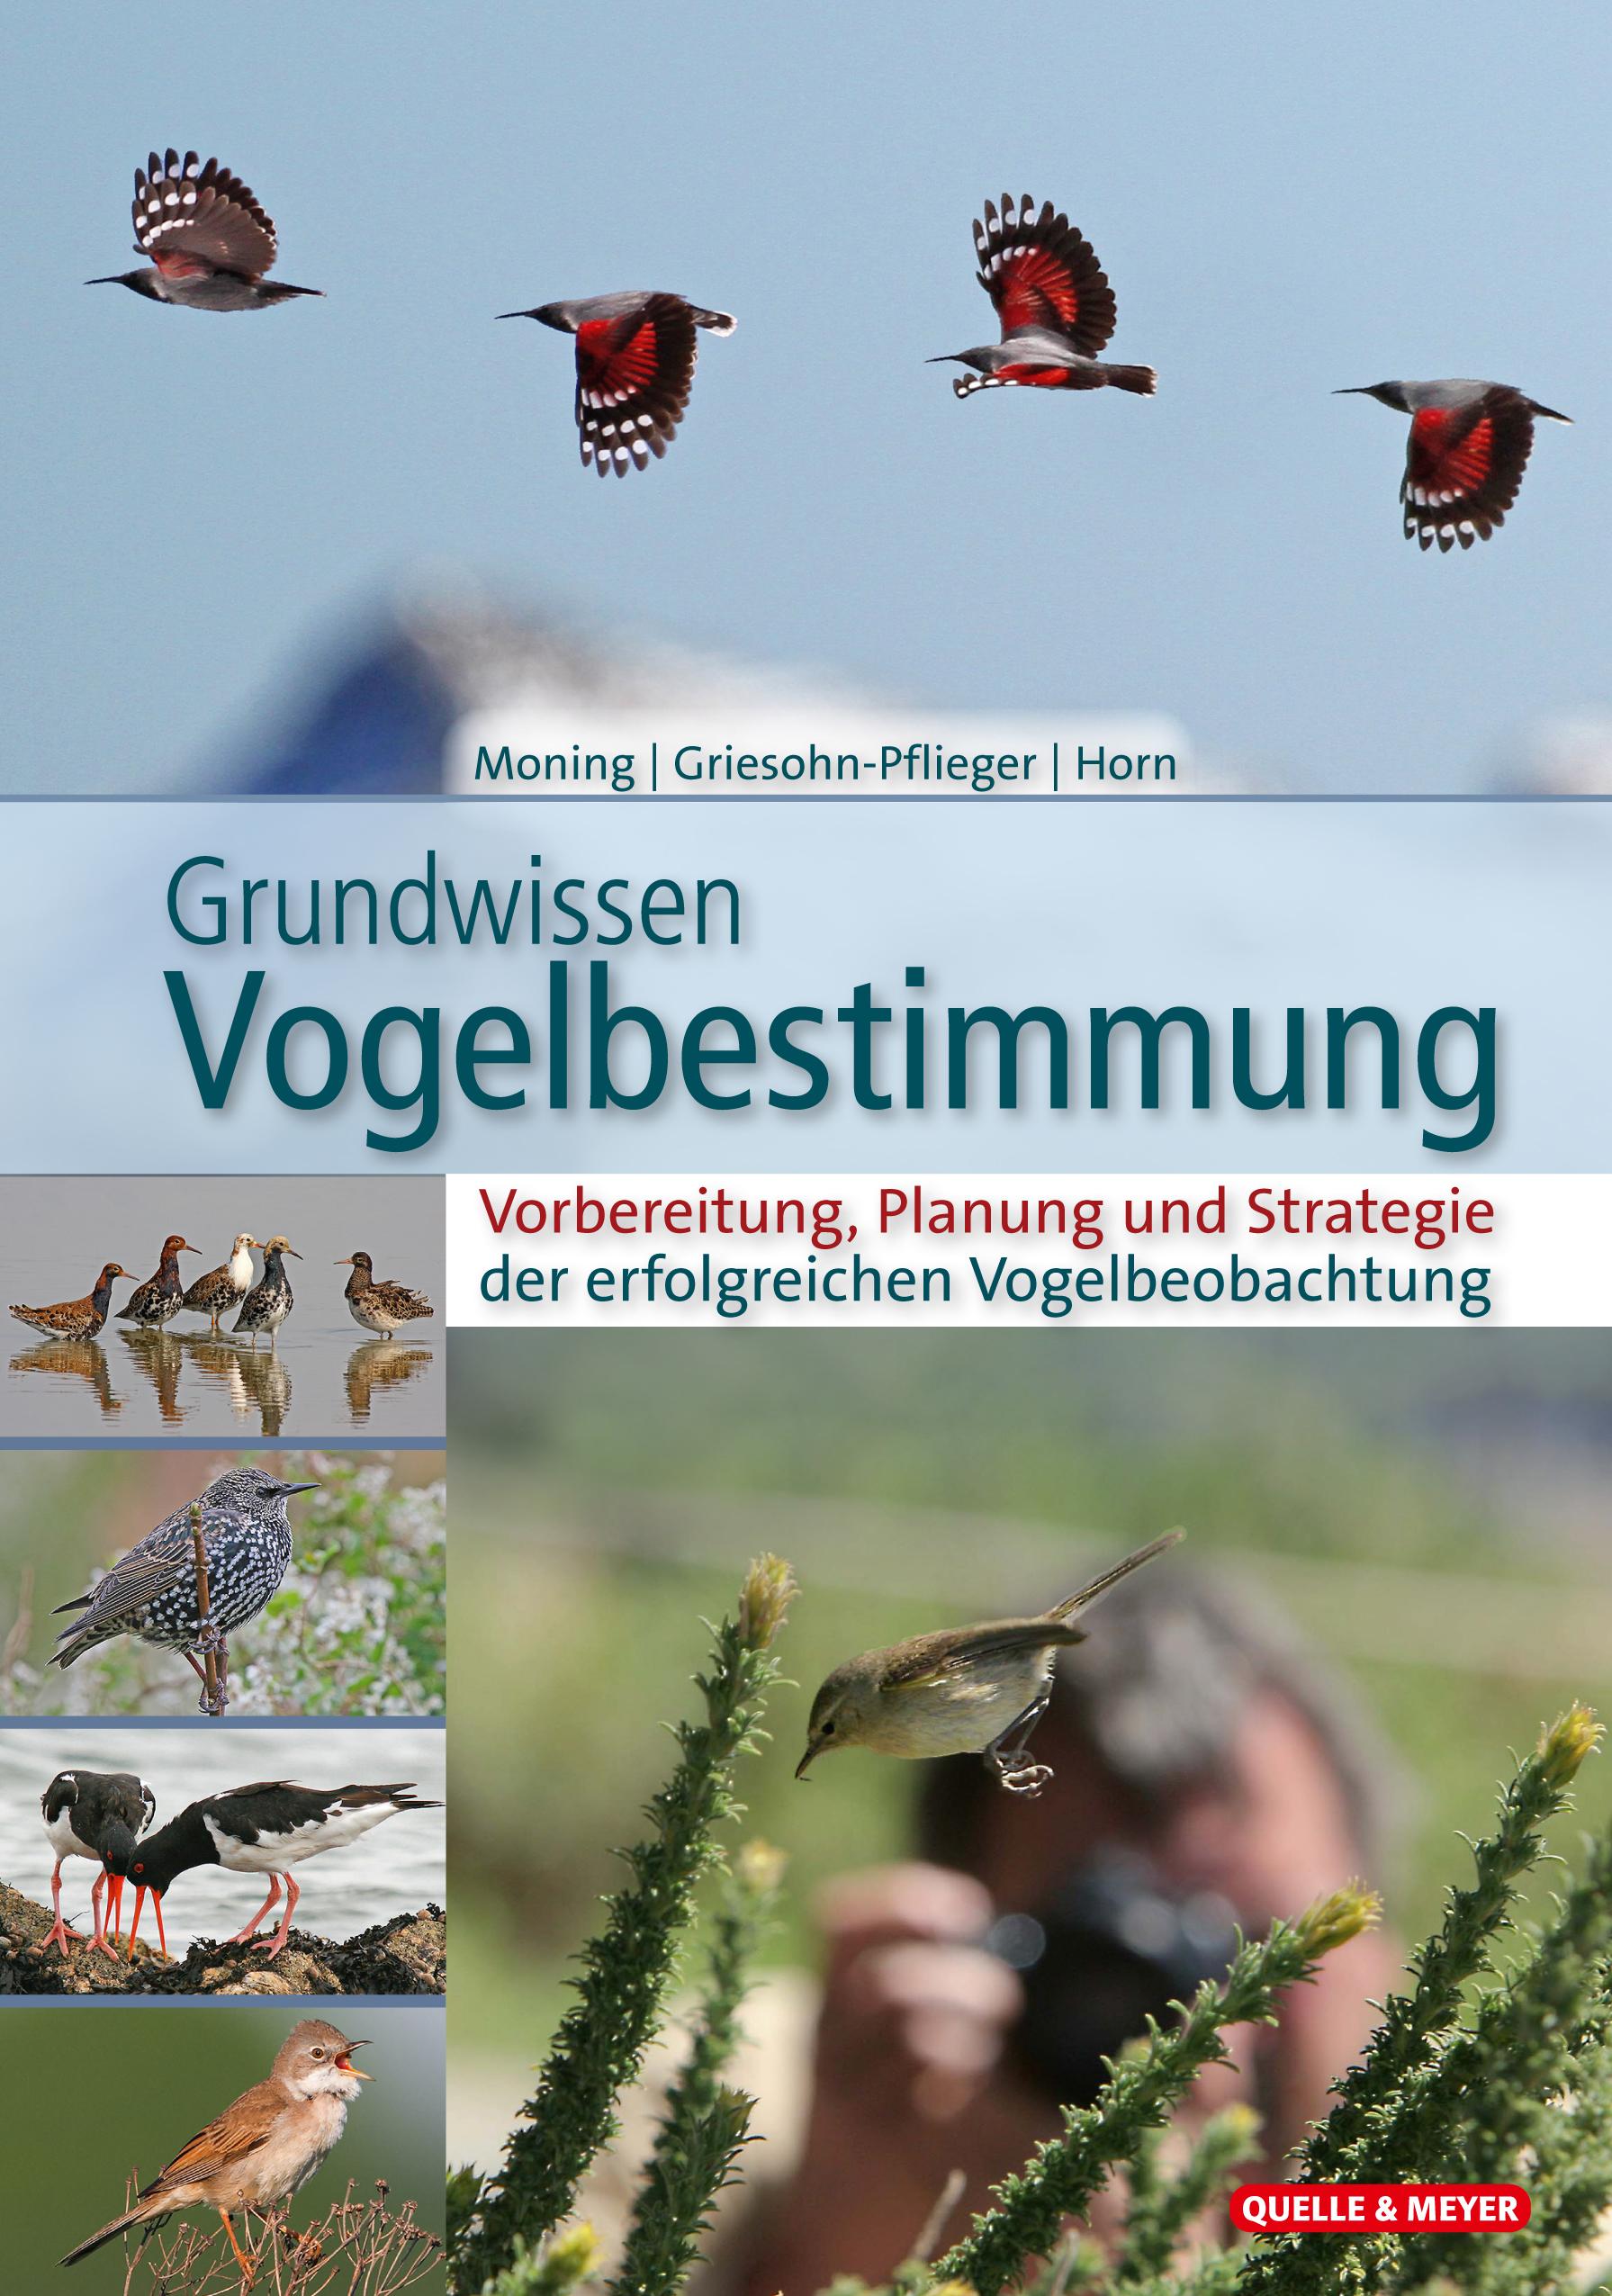 Grundwissen Vogelbestimmung Vorbereitung, Planung und Strategie der erfolgreichen Vogelbeobachtung